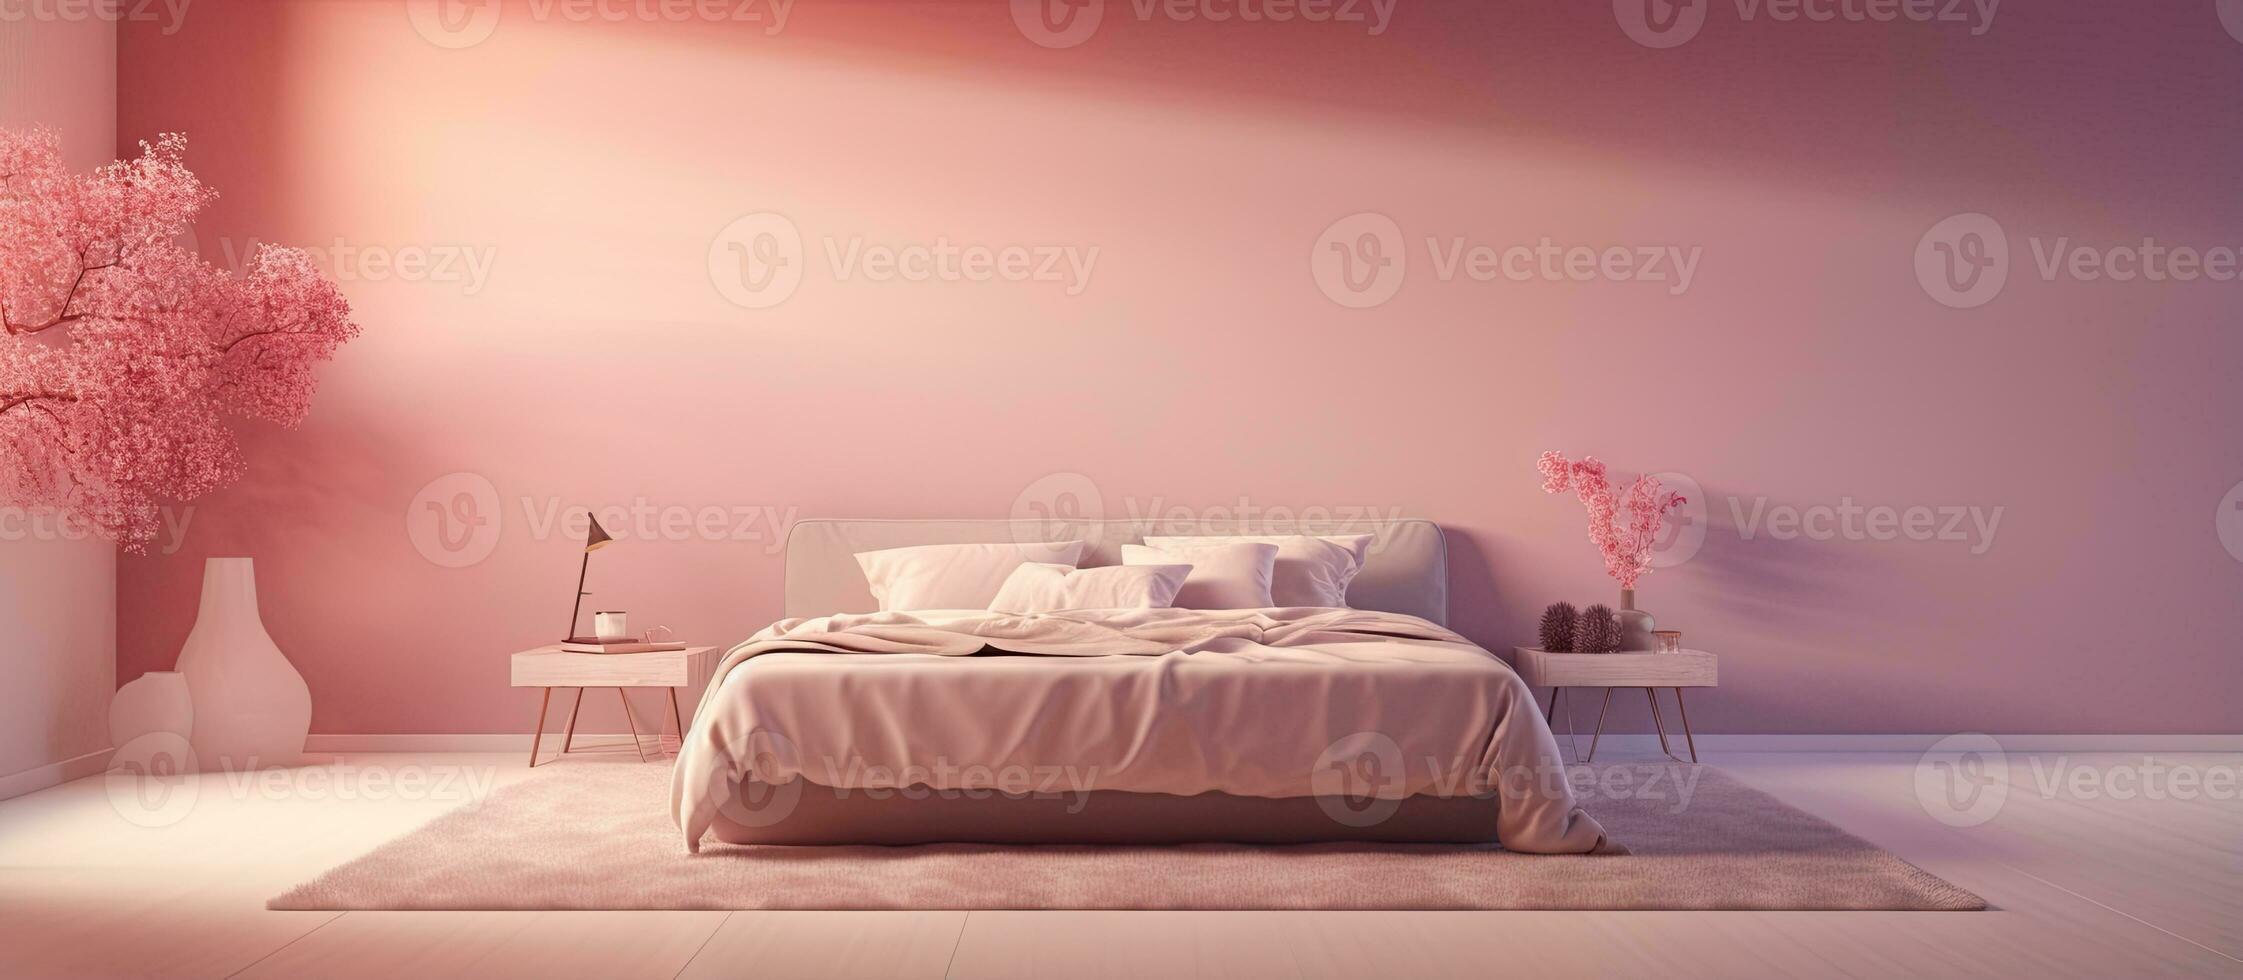 illustrerade säng i en sovrum interiör foto